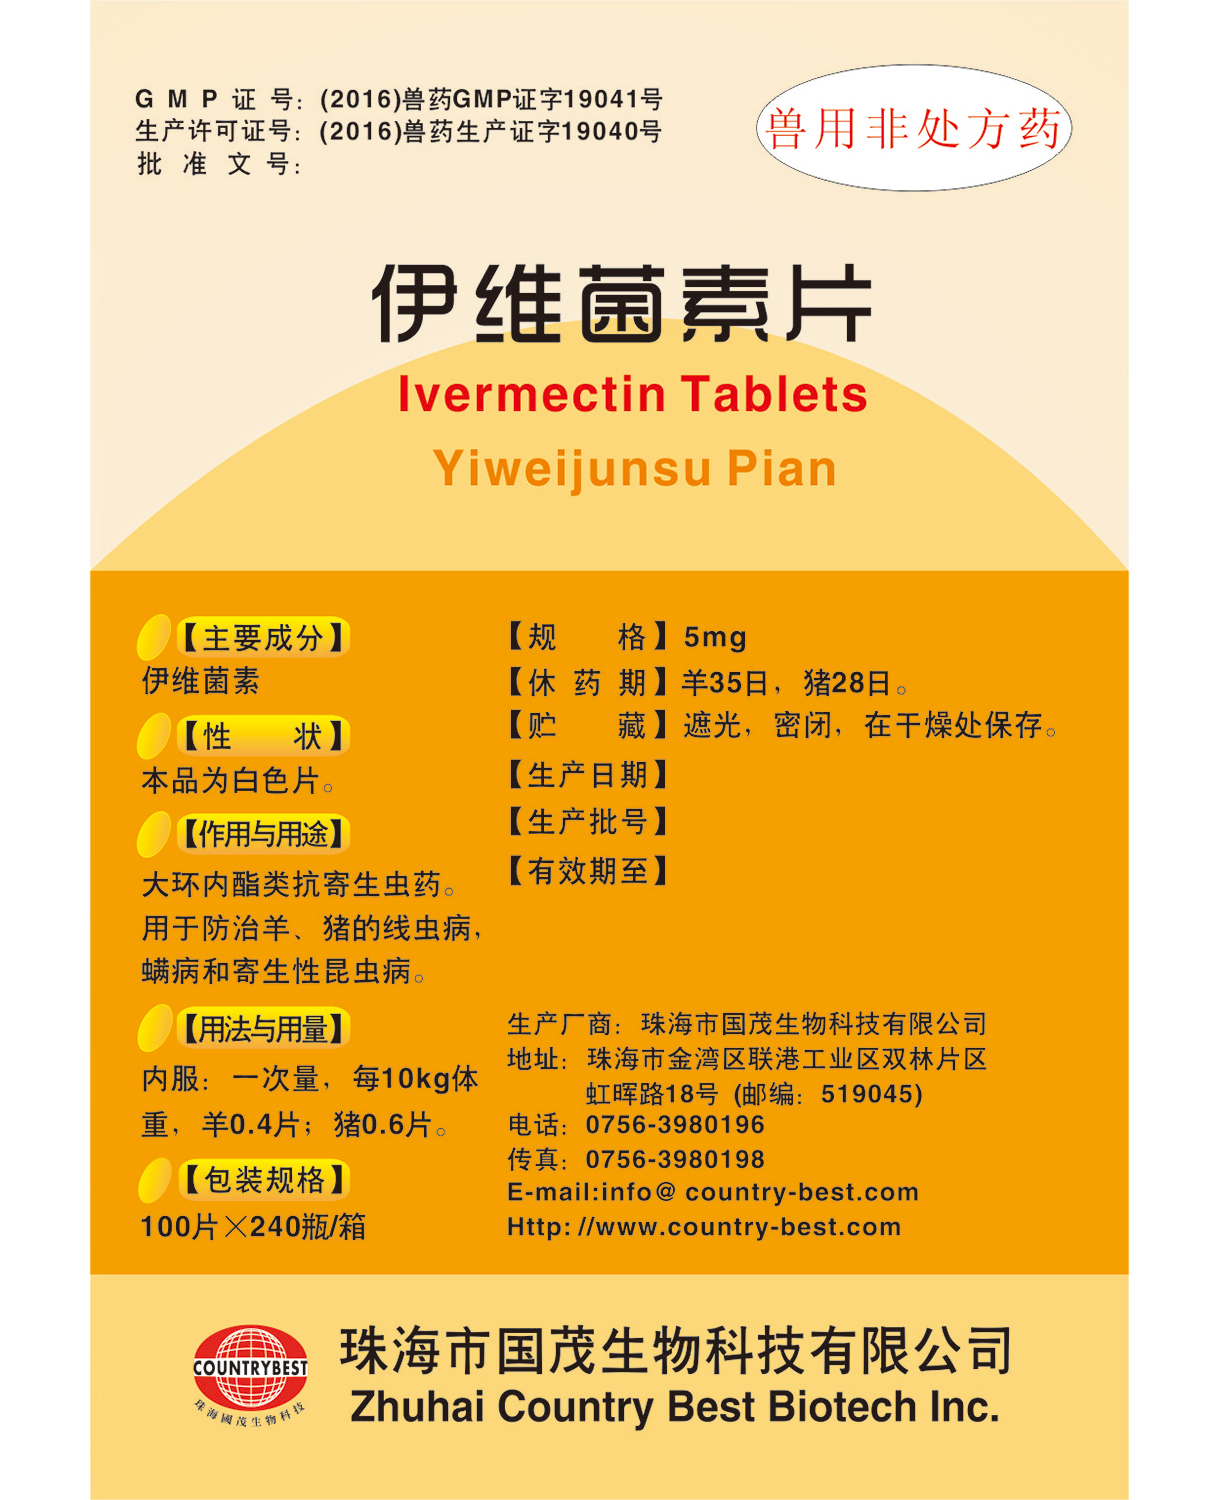 Ivermectin tabletas (medicamentos veterinarios sin receta) 伊维菌素片(兽用非处方药)